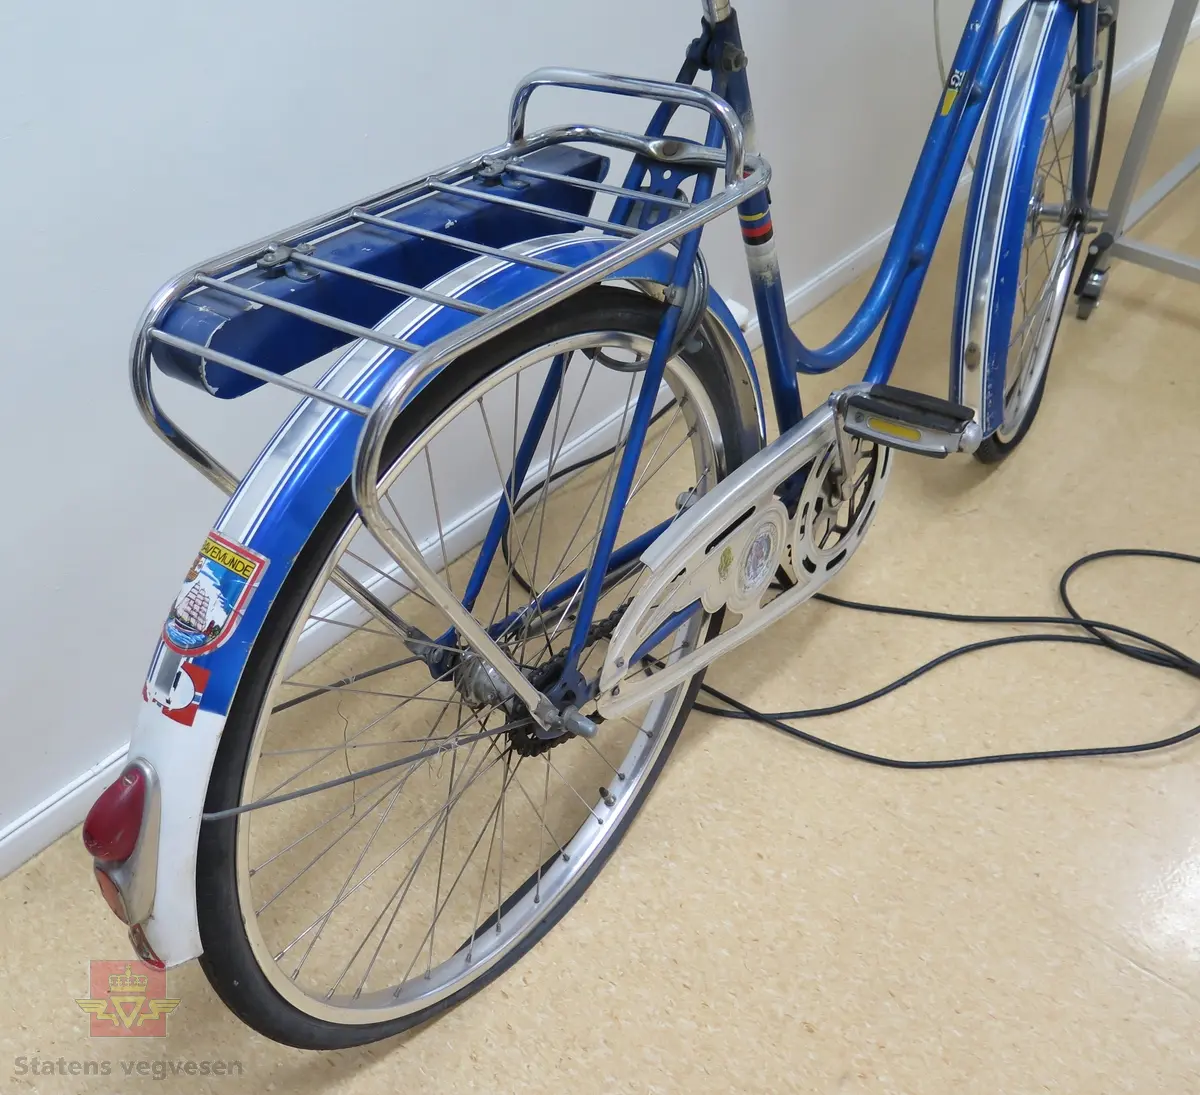 Sykkel, damemodell. Sykkelen er blå og hvit med brunt sete og hvite styreholker. Sykkelen er utstyrt med bagasjebrett, ringeklokke, frontlykt og refleks bak. Sykkelen har lås med nøkkel.